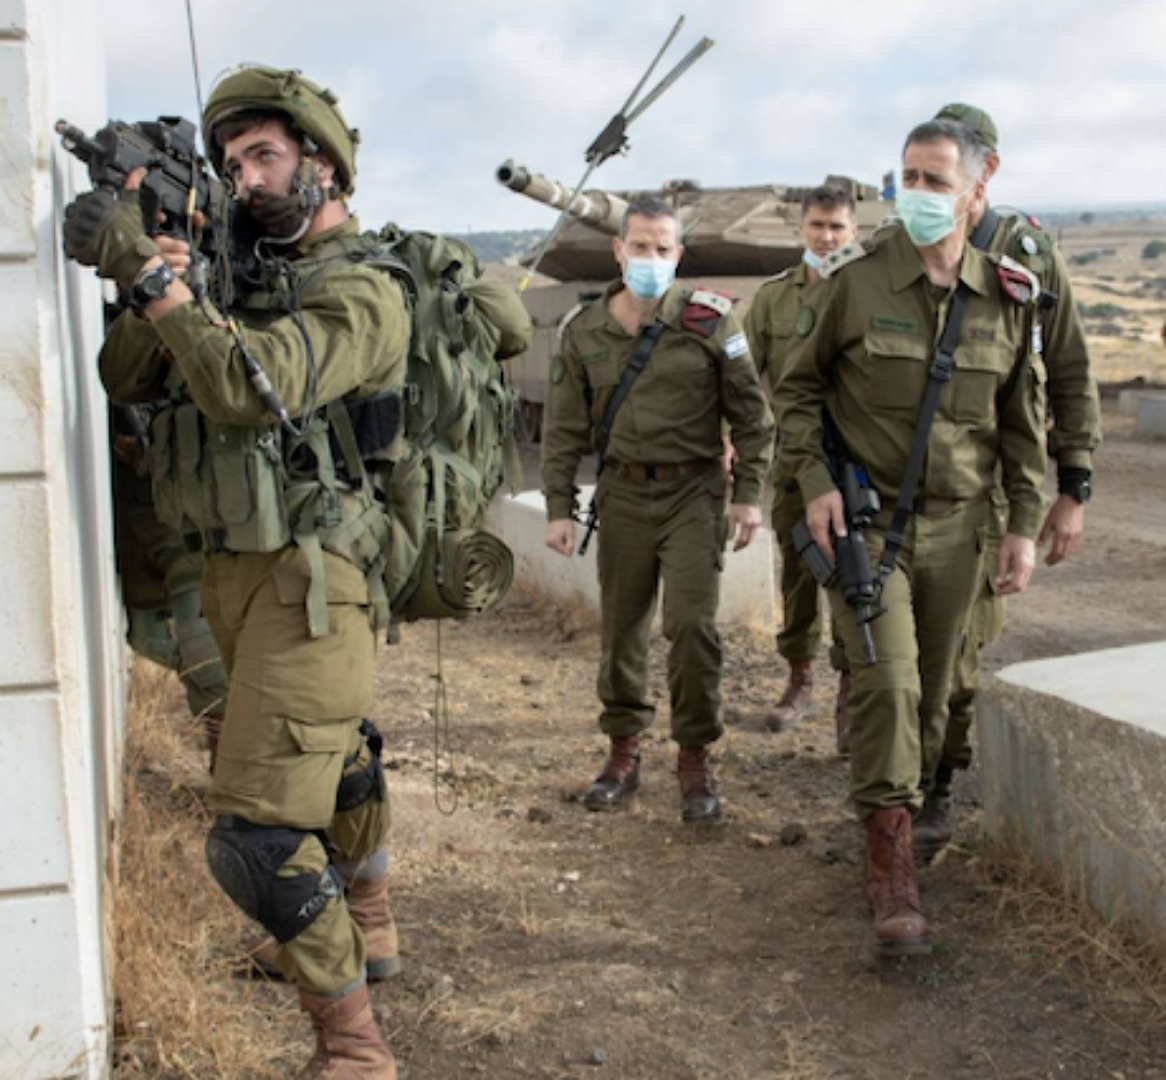 تجولوا فيه لساعات وغادروه بسلام....شبان فلسطينيون يتسللون إلى موقع عسكري اسرائيلي